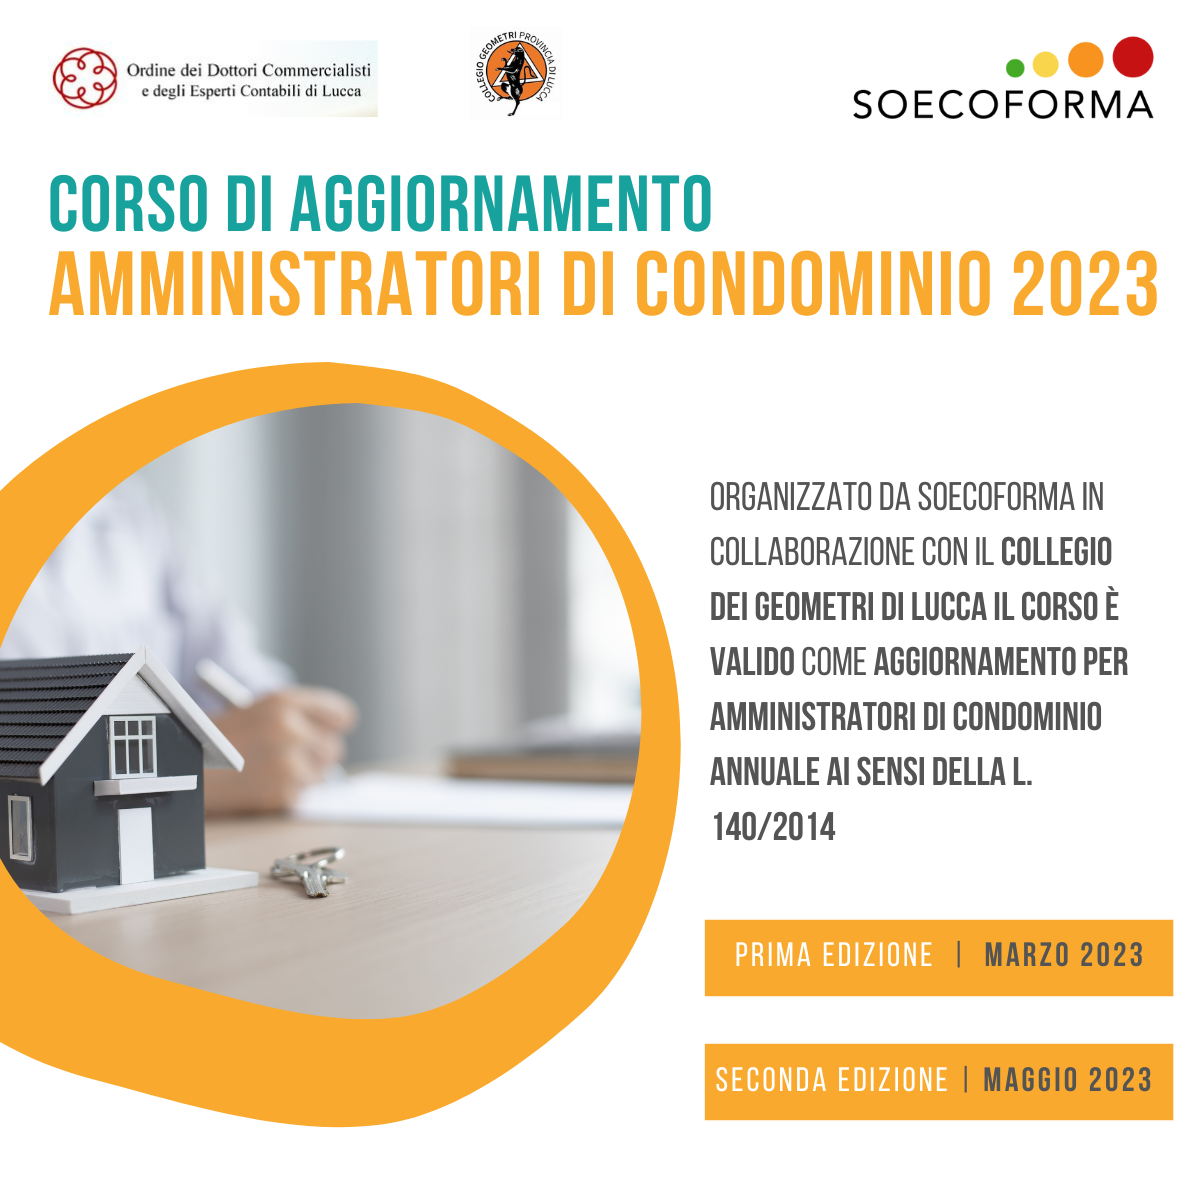 CORSO AGG CONDOMINIO (1) soecoforma 2023